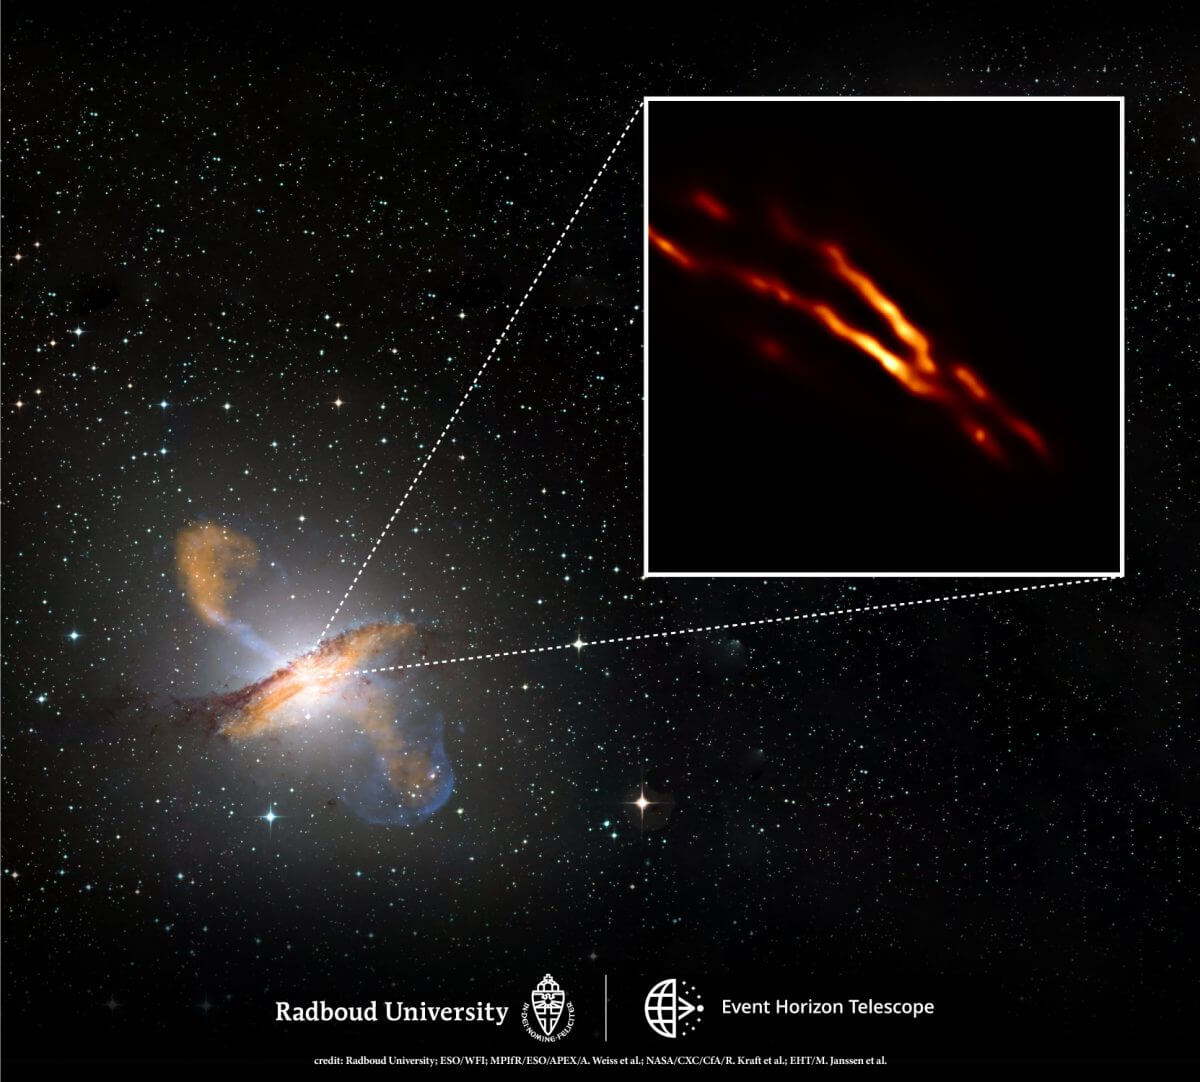 電波銀河「ケンタウルス座A」（左下）の中心部分、噴出するジェットの根元を電波で捉えた今回の観測成果（右上）を示した画像（Credit: Radboud University; ESO/WFI; MPIfR/ESO/APEX/A. Weiss et al.; NASA/CXC/CfA/R. Kraft et al.; EHT/M. Janssen et al.）